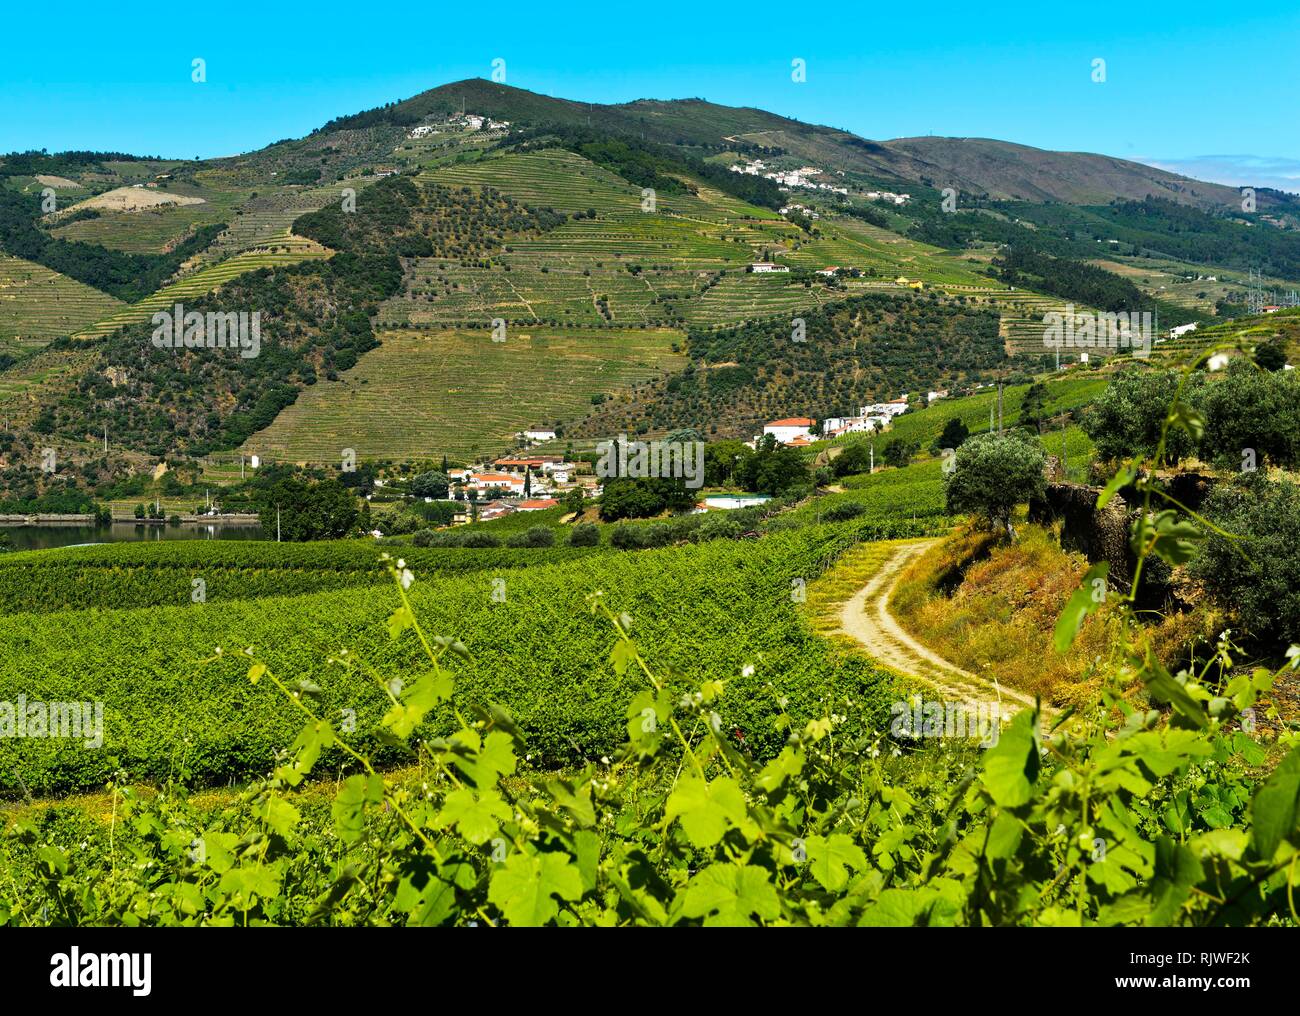 Viñedos de la región vinícola de Alto Douro, Pinhao, en el valle del Douro, Portugal Foto de stock